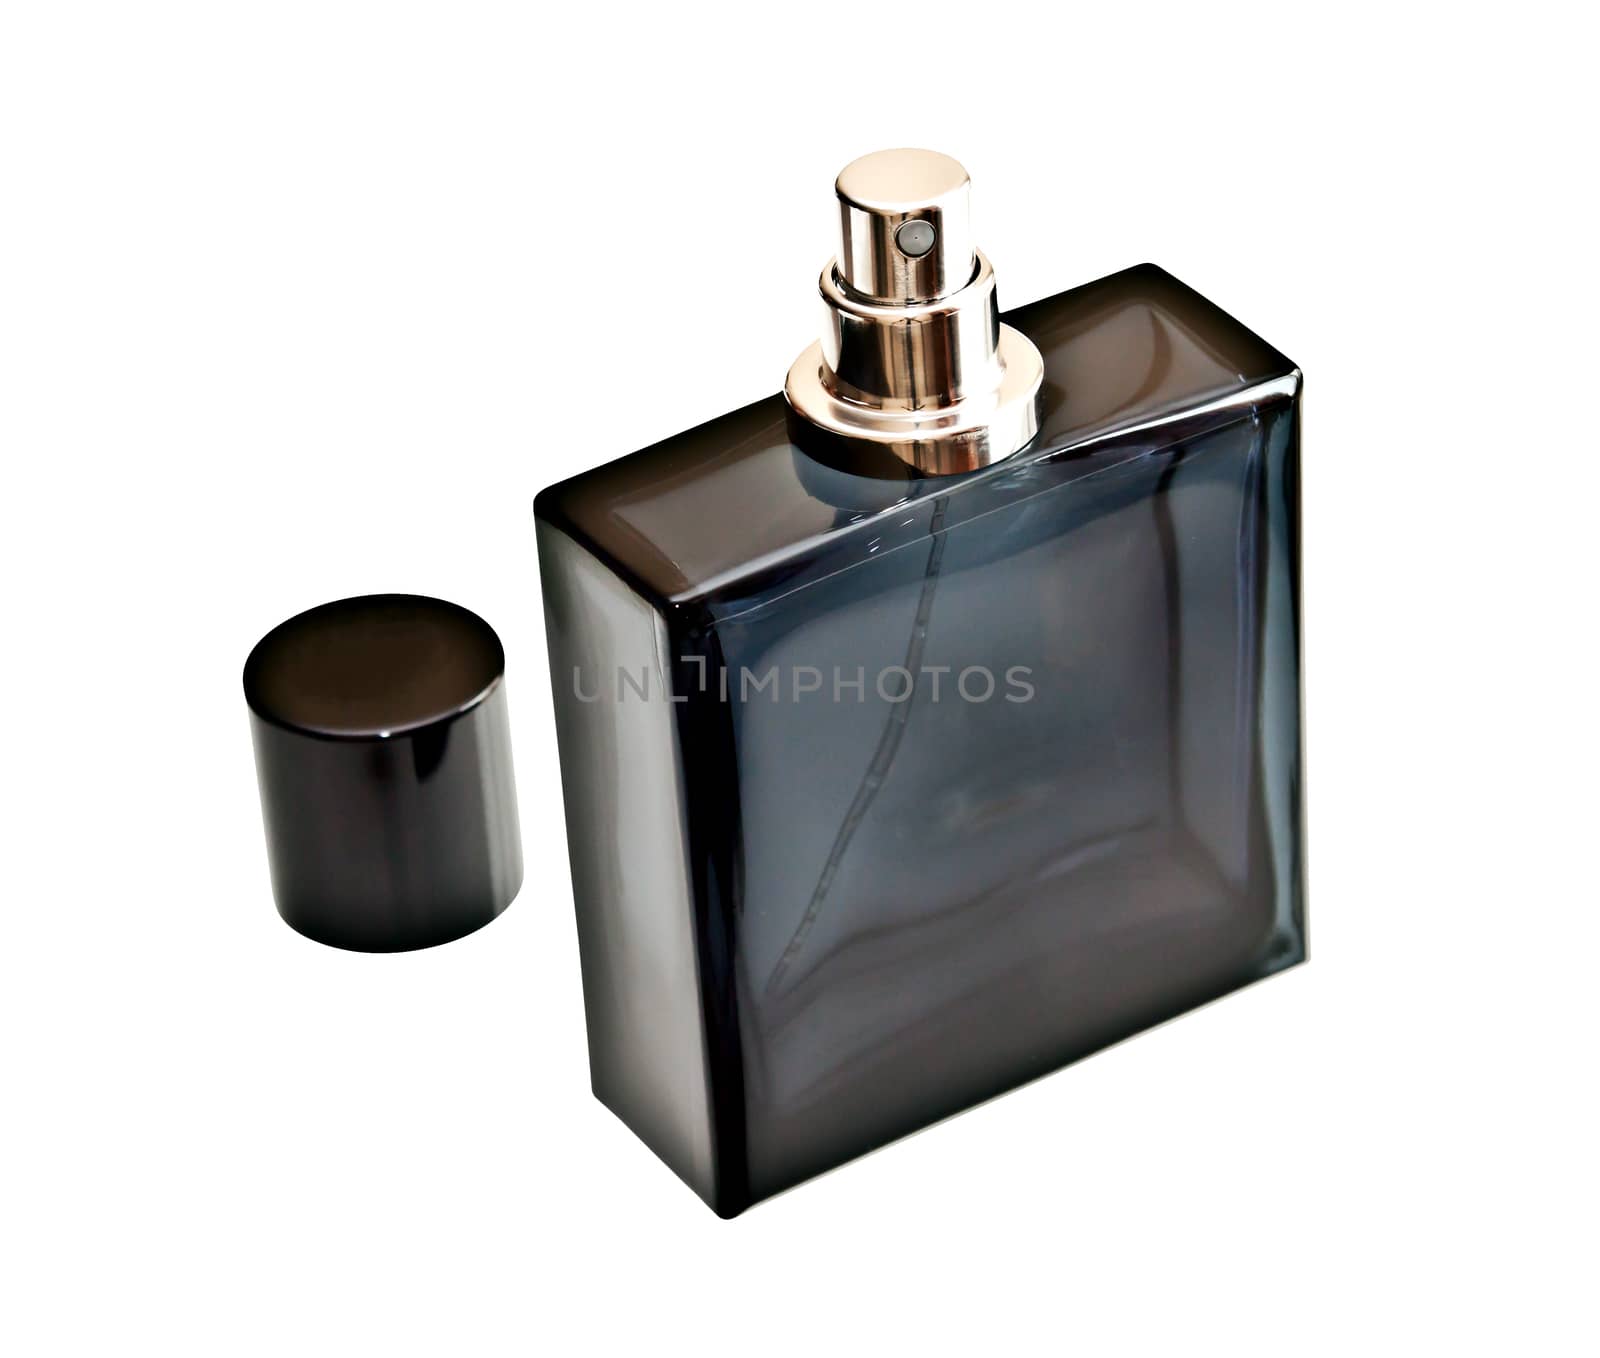 Perfume bottle isolated on white background
